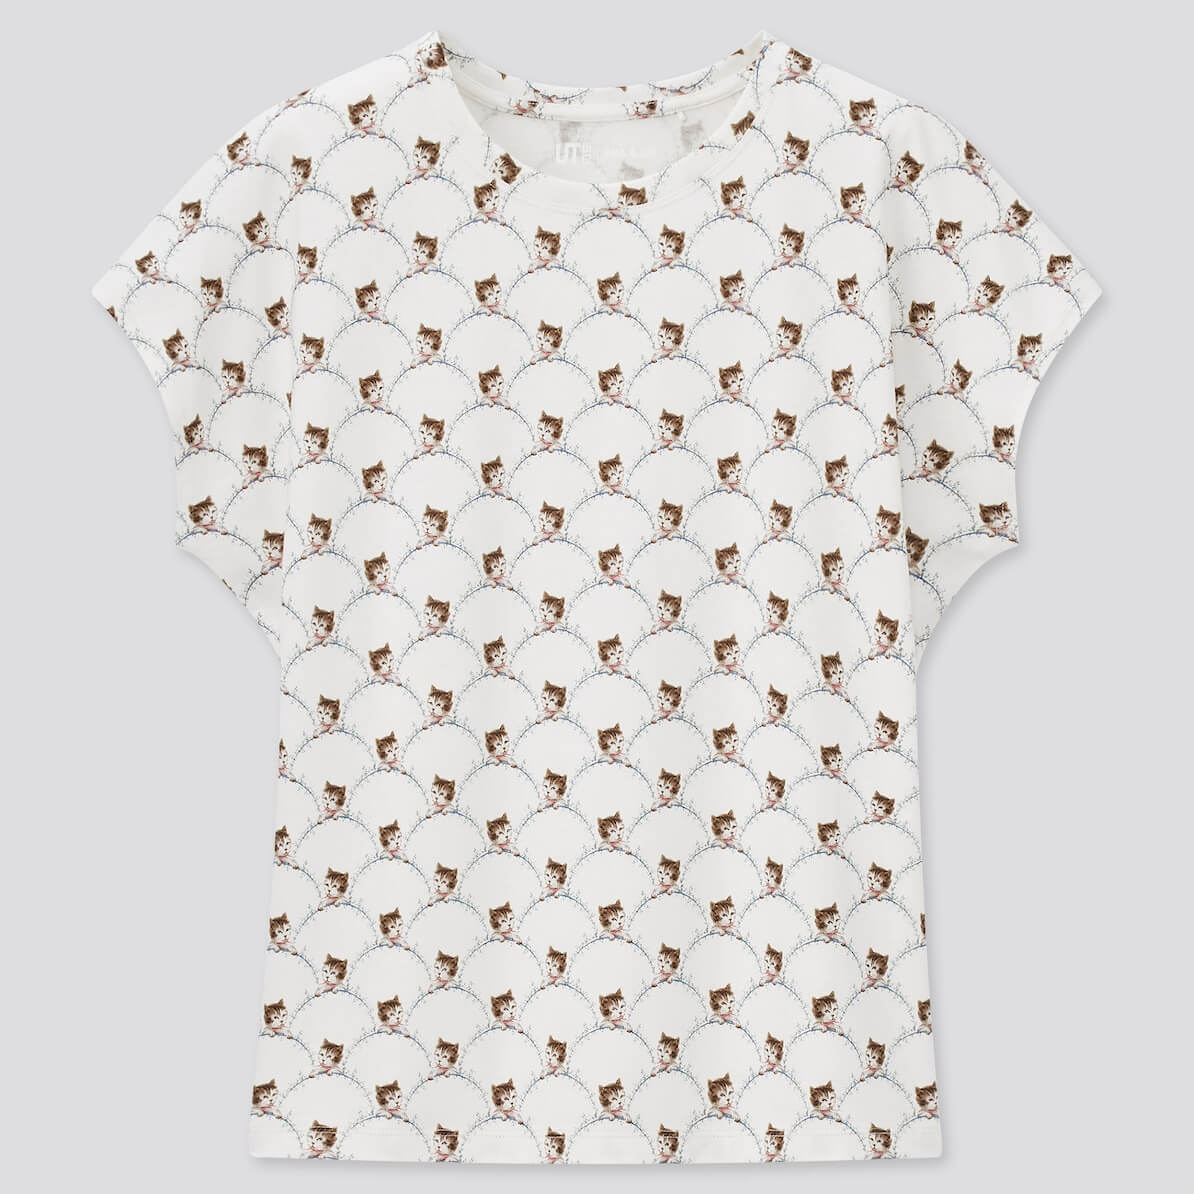 タイムレスキャット柄のデザインTシャツ by UTとポールアンドジョーのコラボ商品